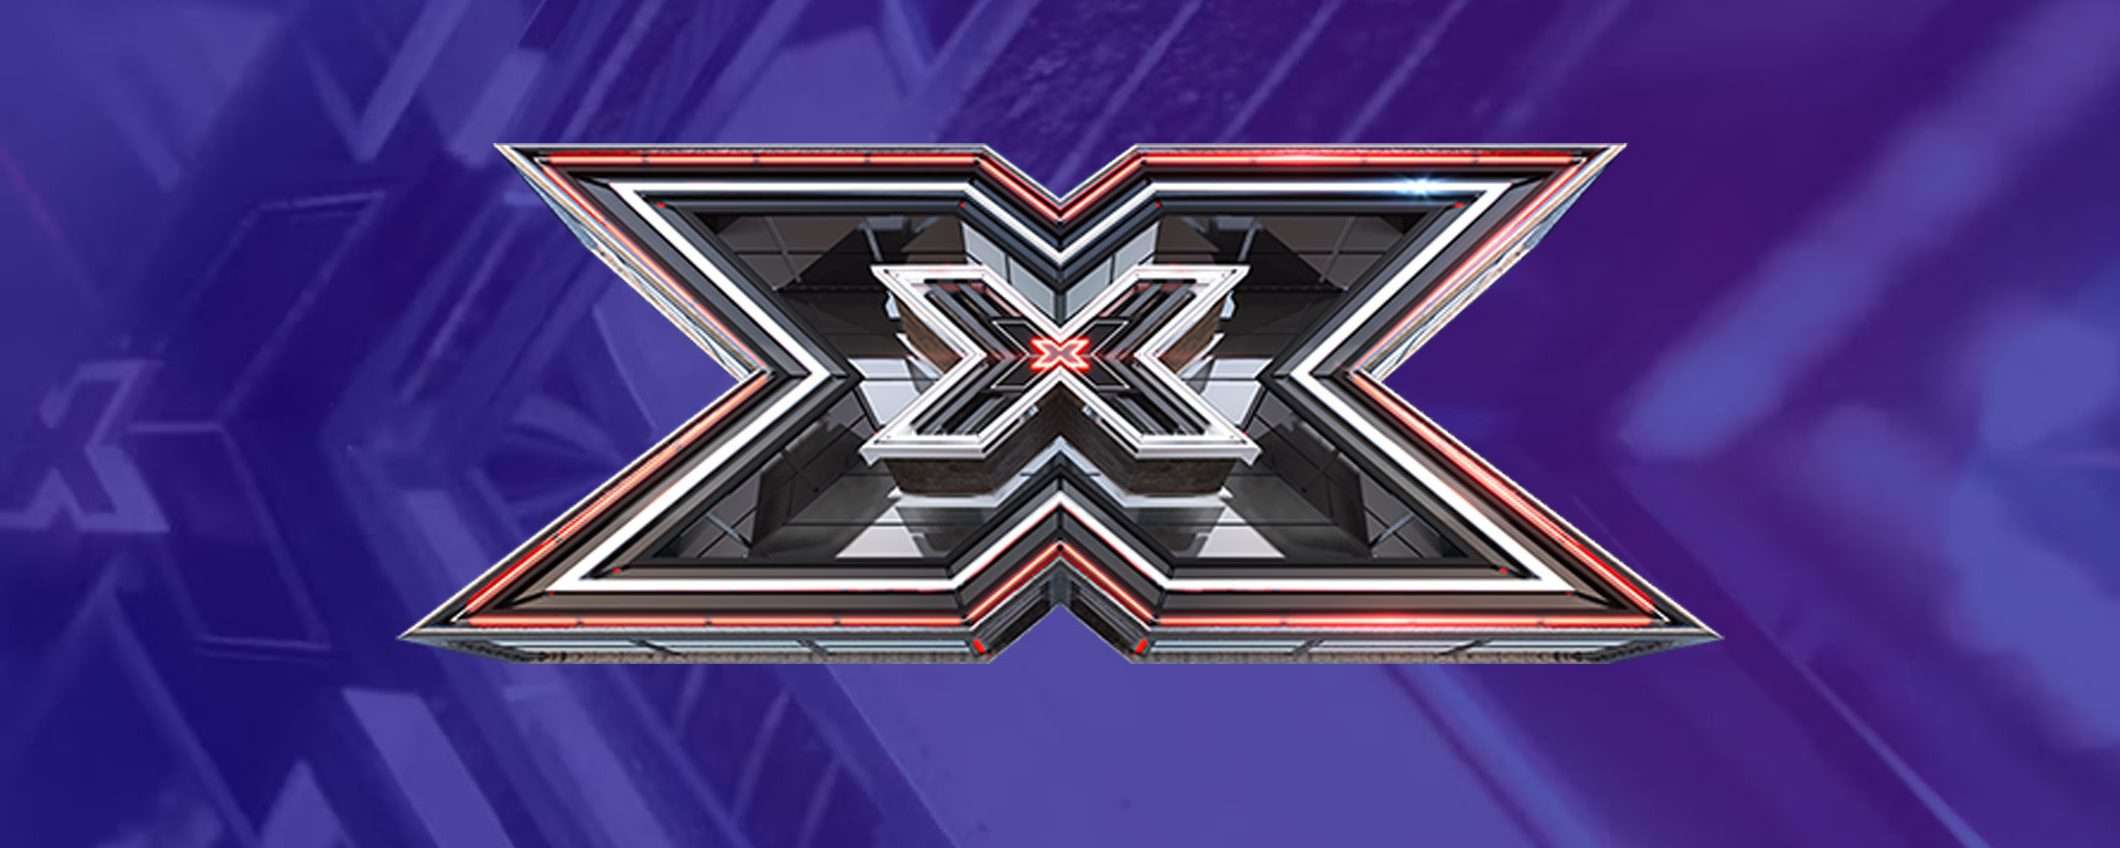 Come vedere la prima puntata di X Factor in streaming